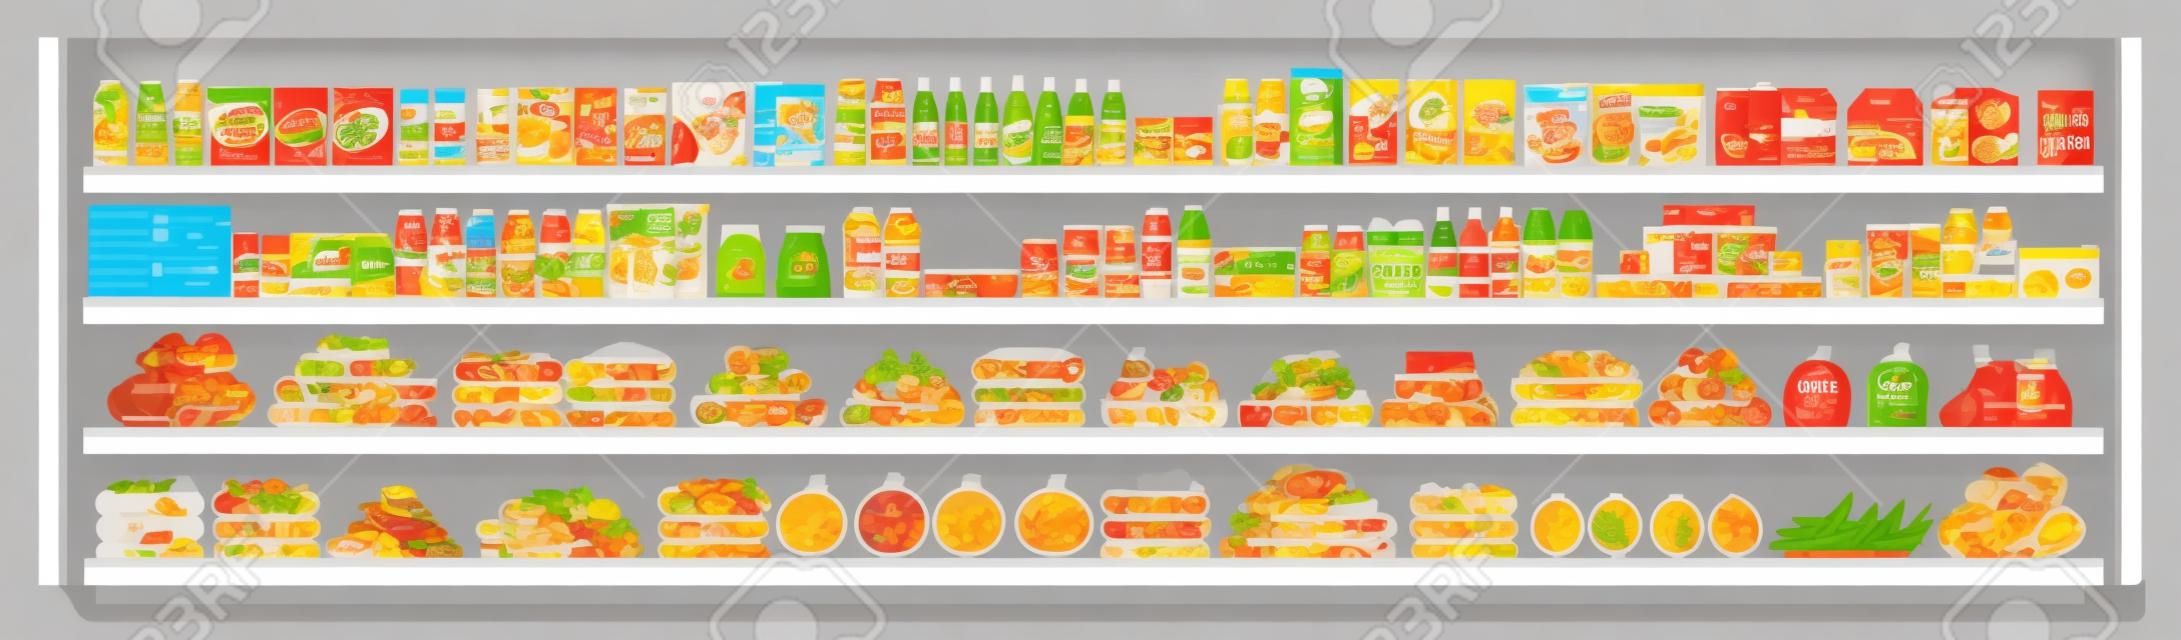 Levensmiddelenwinkel items op de supermarkt planken en biedt vol met assortiment van voedsel en dranken vlakke vector naadloze achtergrond illustratie. Winkelen en retail concept.